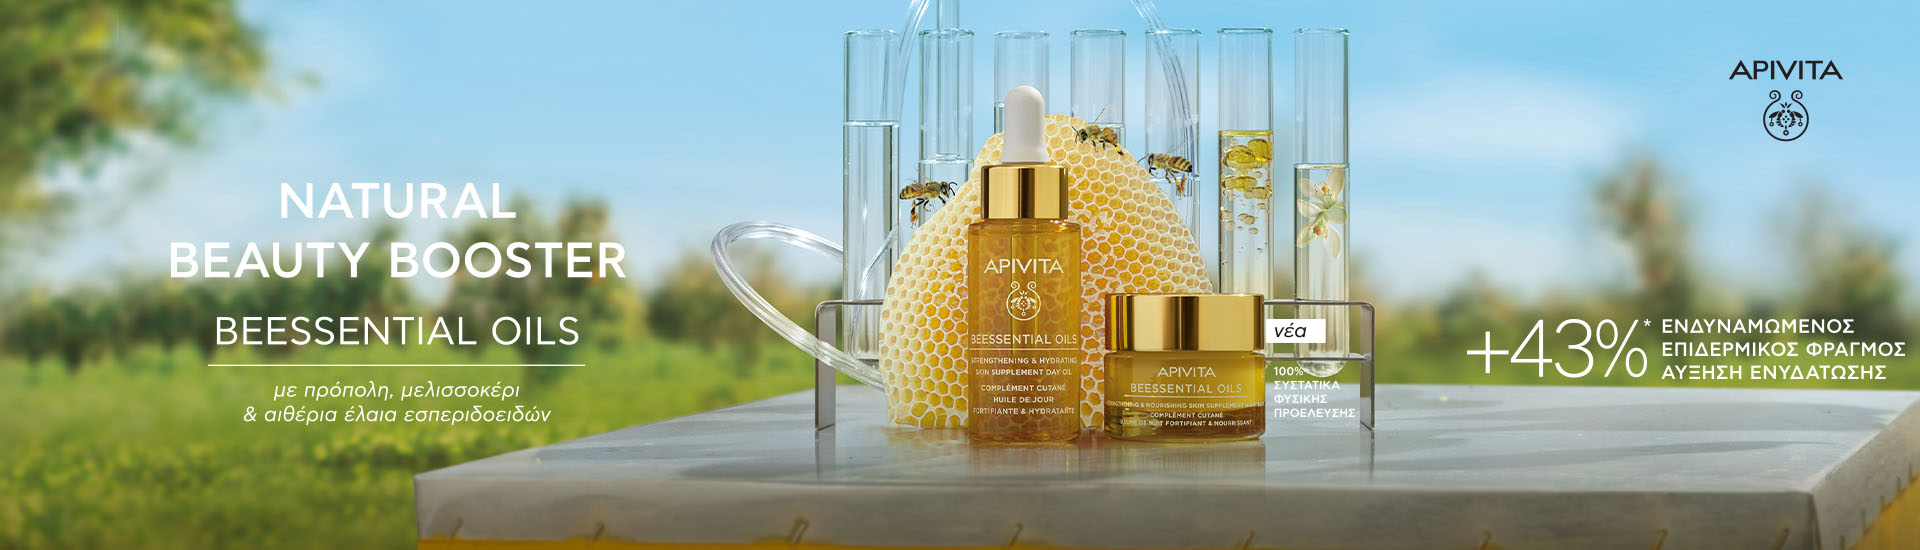 Apivita - Beessential Oils